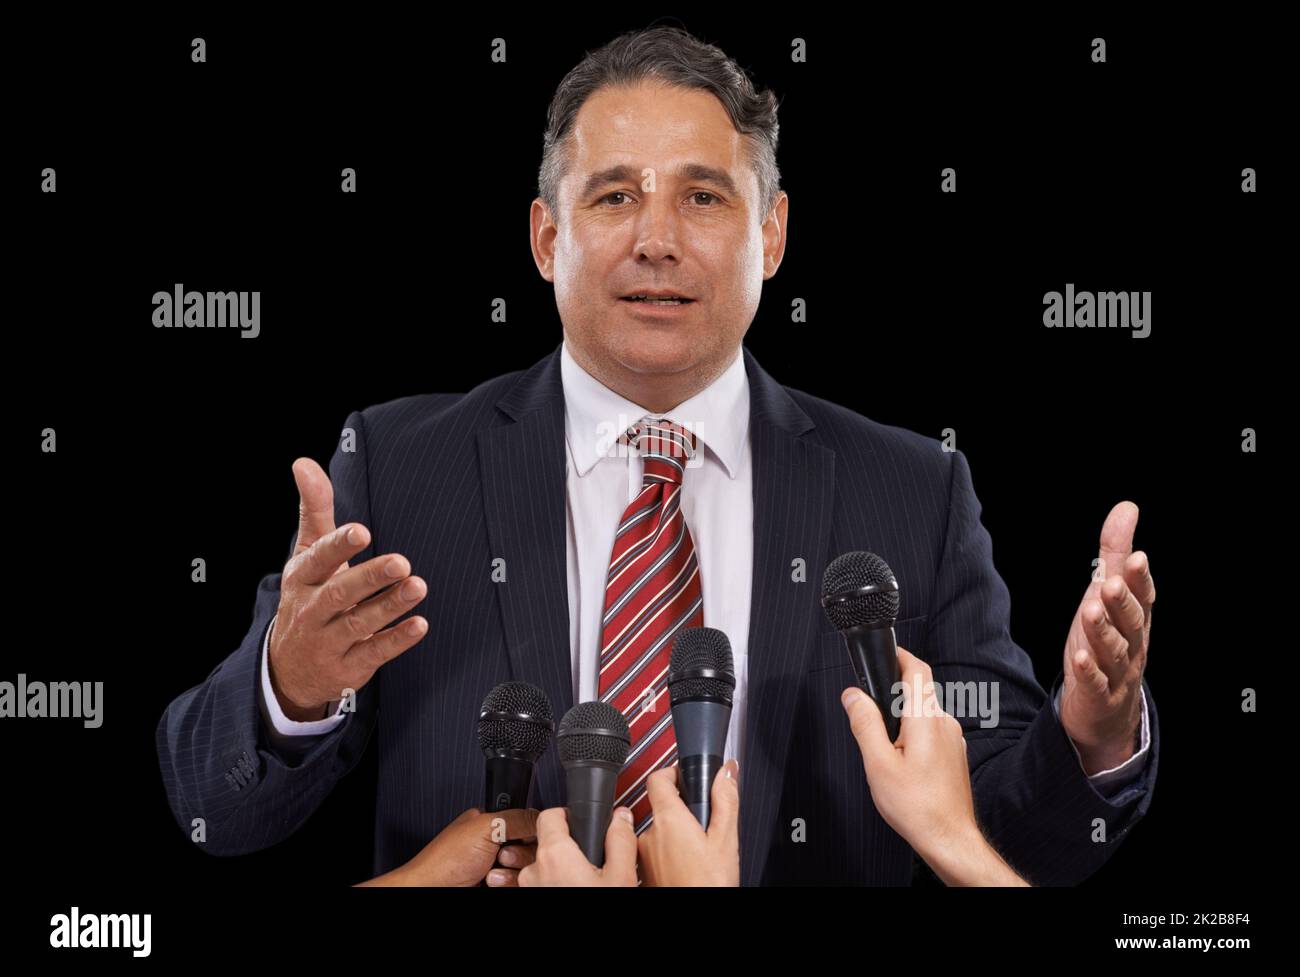 Der Presse. Porträt eines reifen Mannes, der auf schwarzem Hintergrund eine Pressekonferenz gibt. Stockfoto